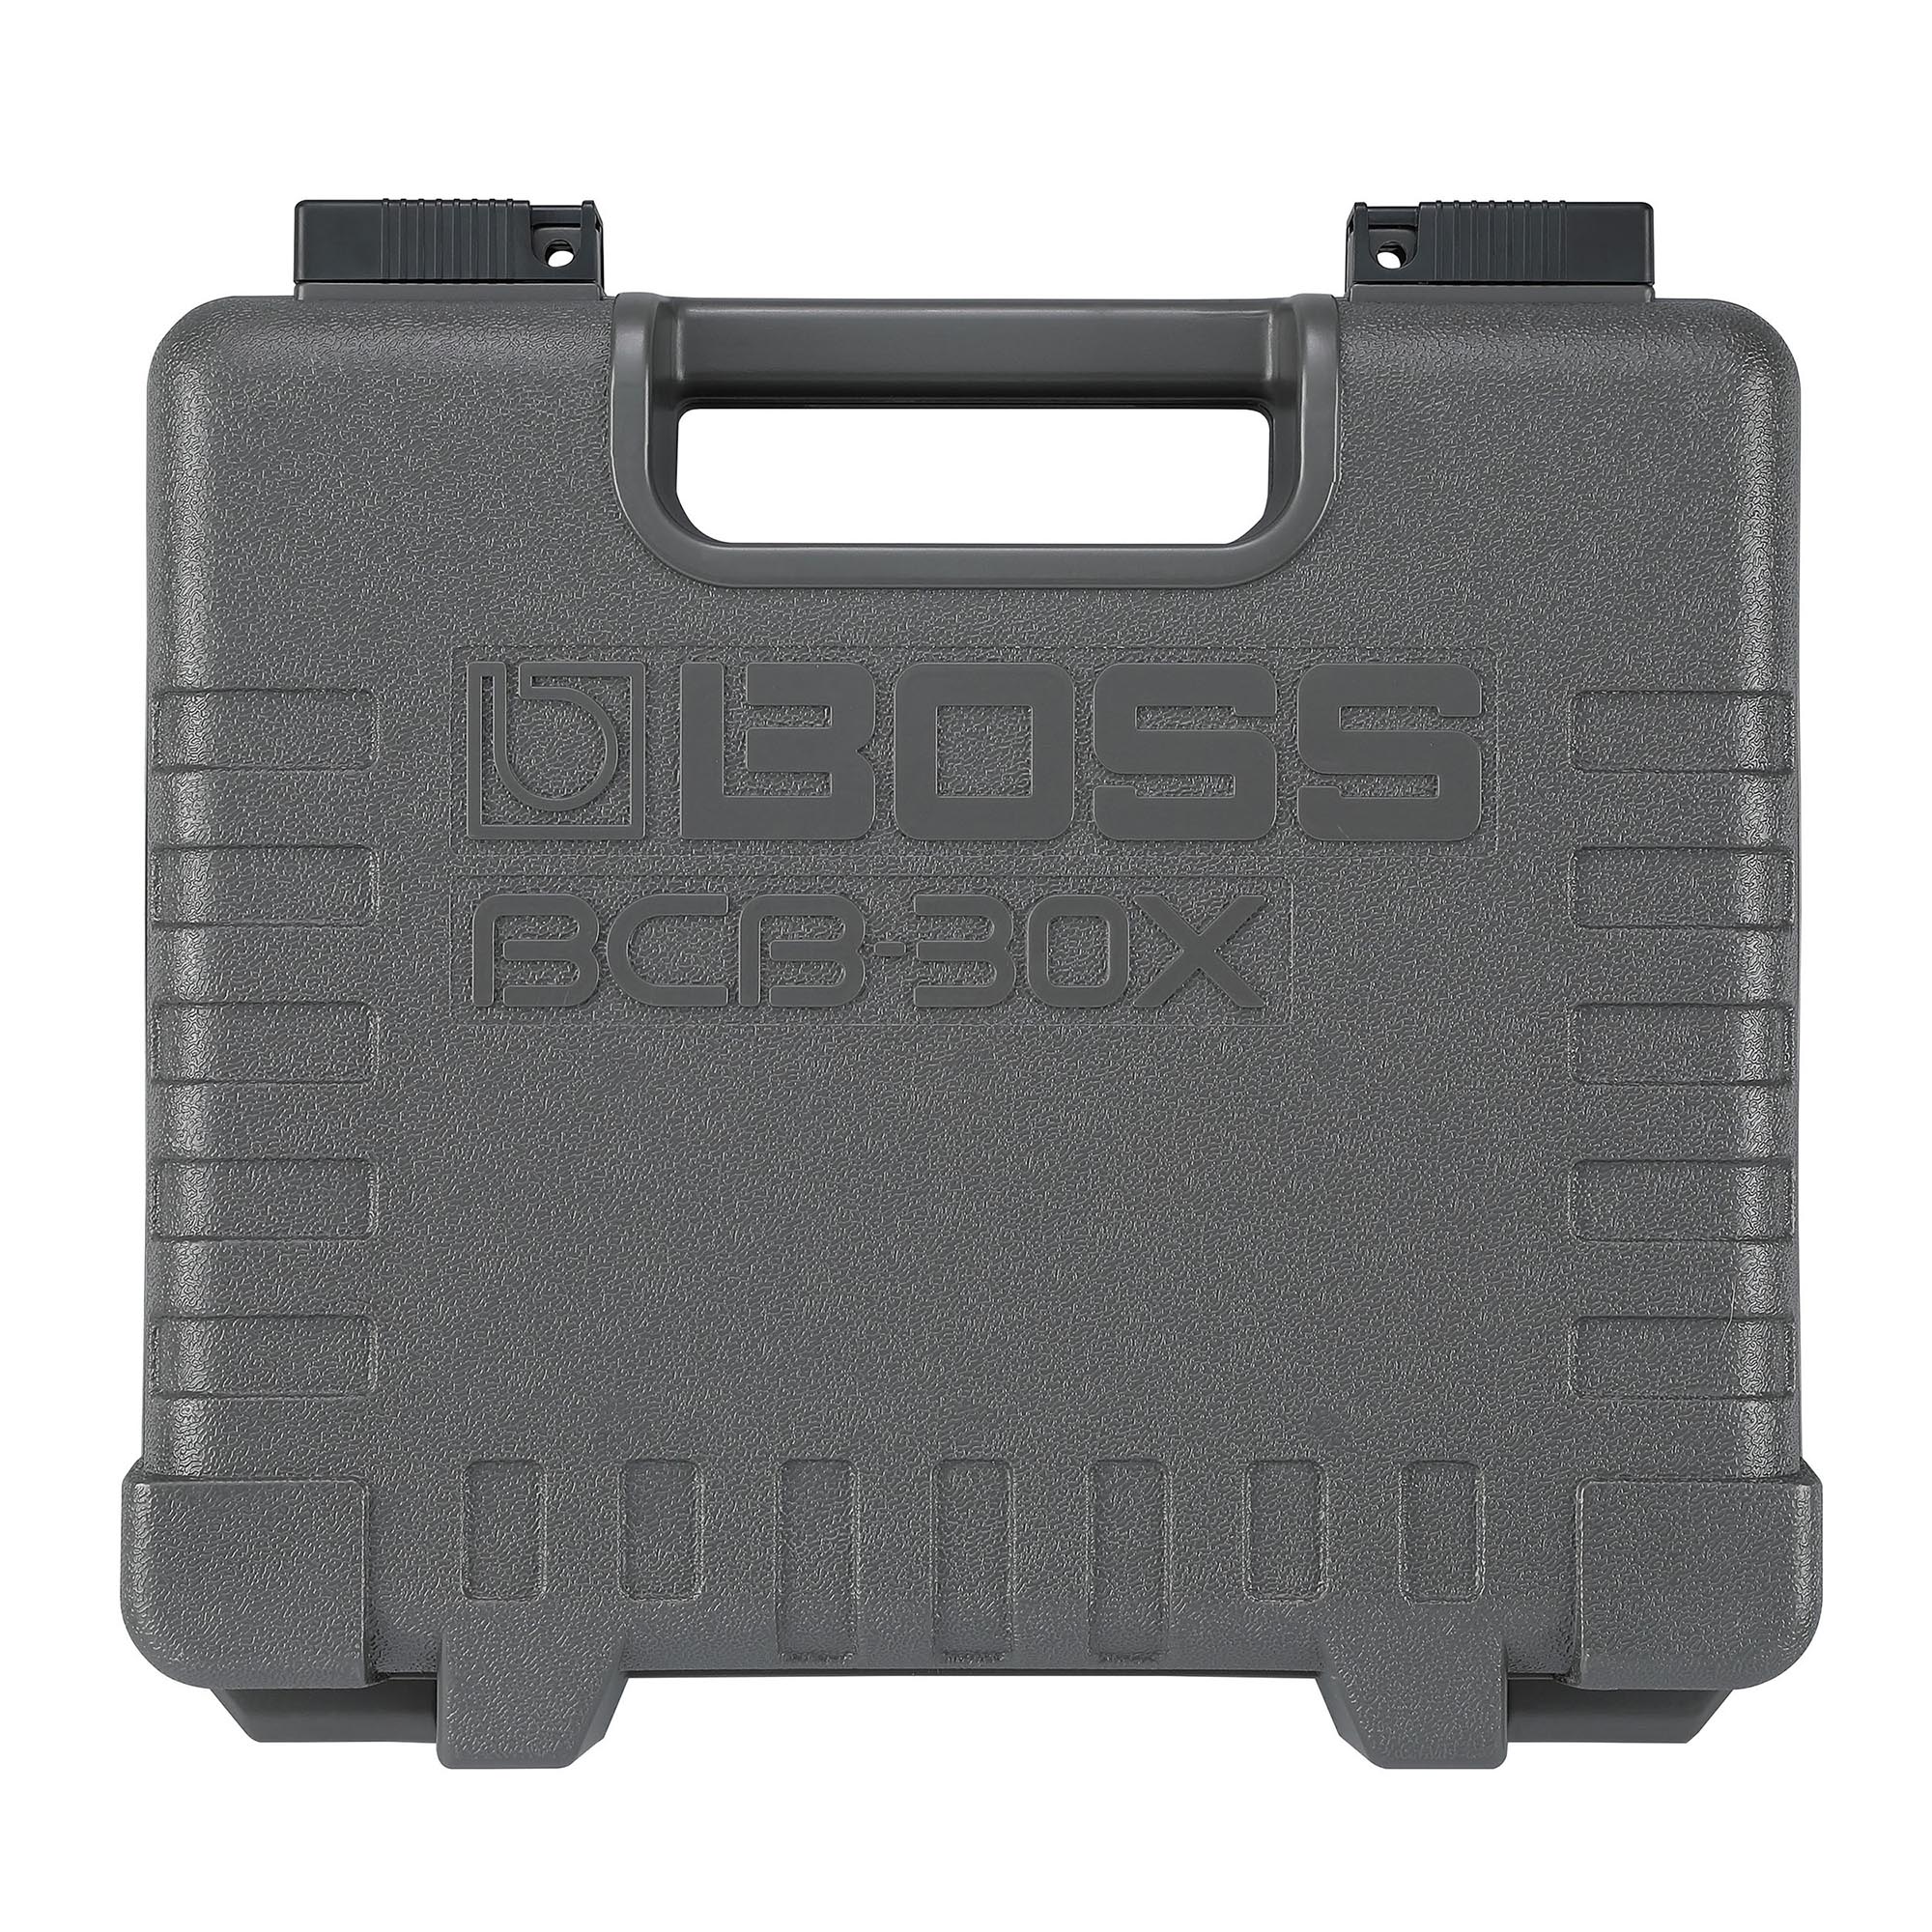 BOSS BCB-30X Pedal Board